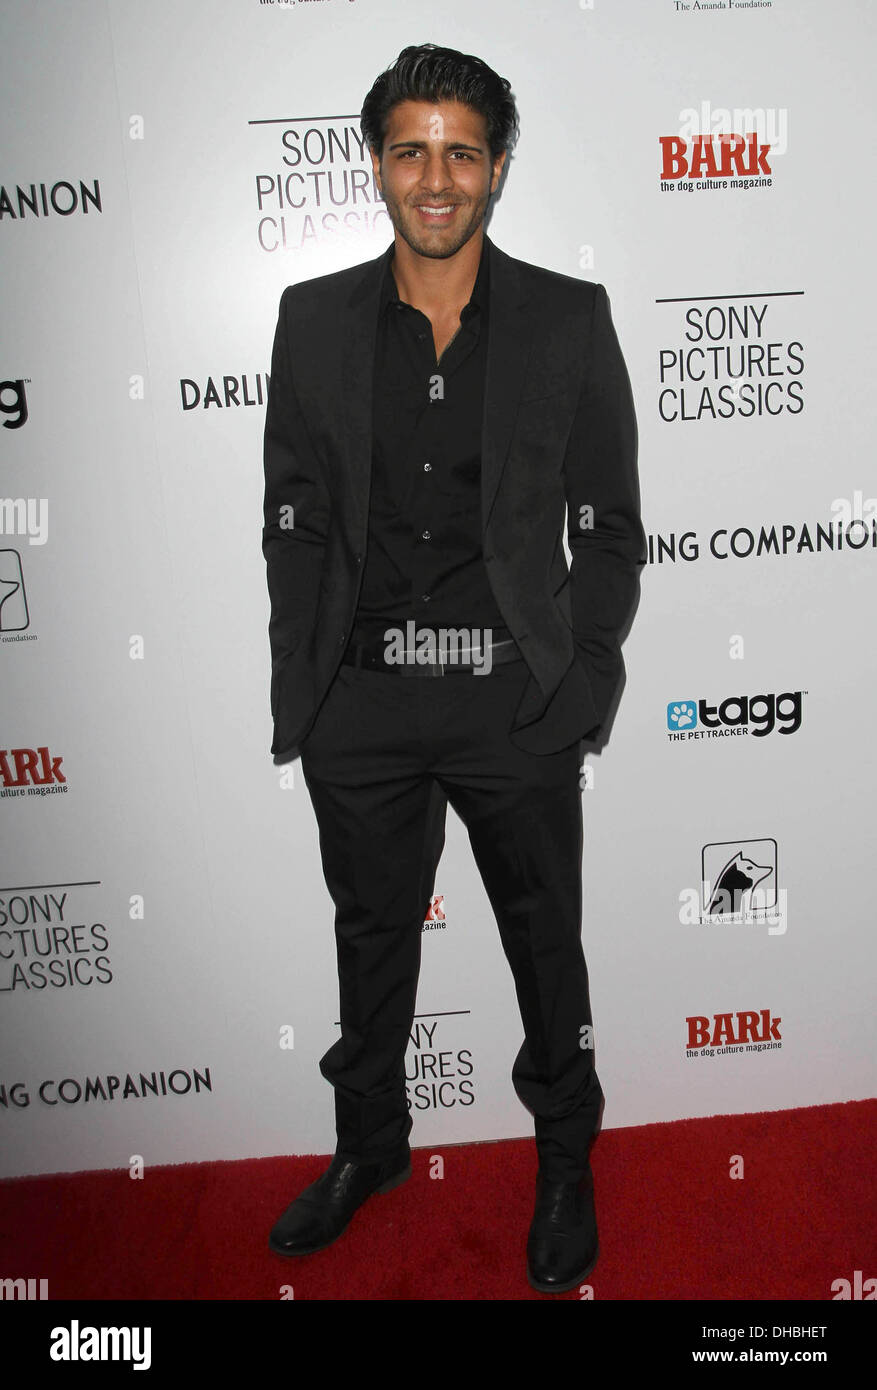 Jay Ali Première mondiale de Sony Pictures Classics' 'Darling Companion' à l'Egyptian Theatre Hollywood Californie - 17.04.12 Banque D'Images